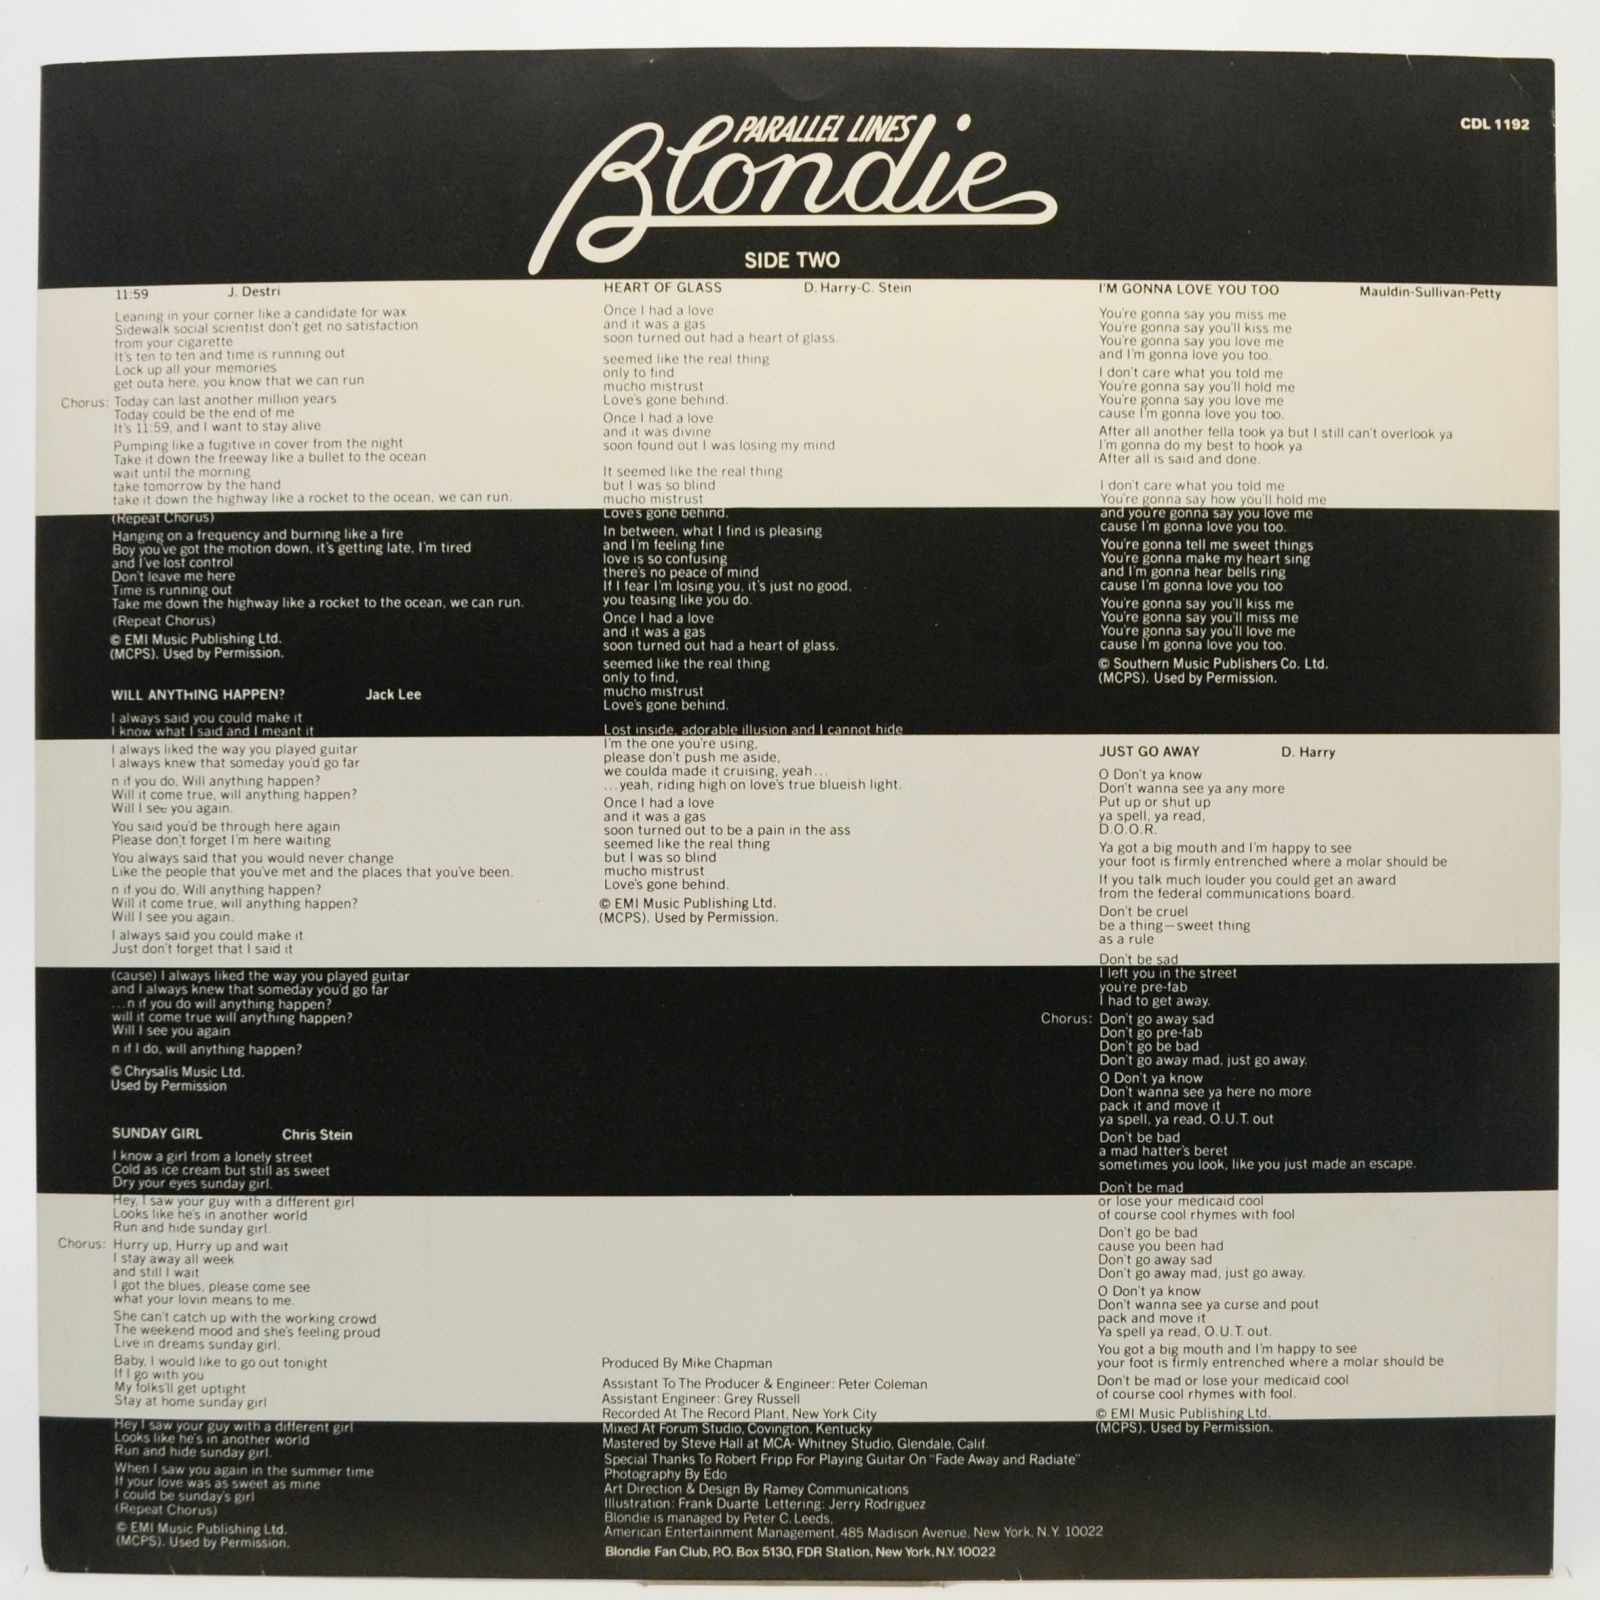 Blondie — Parallel Lines (UK), 1978